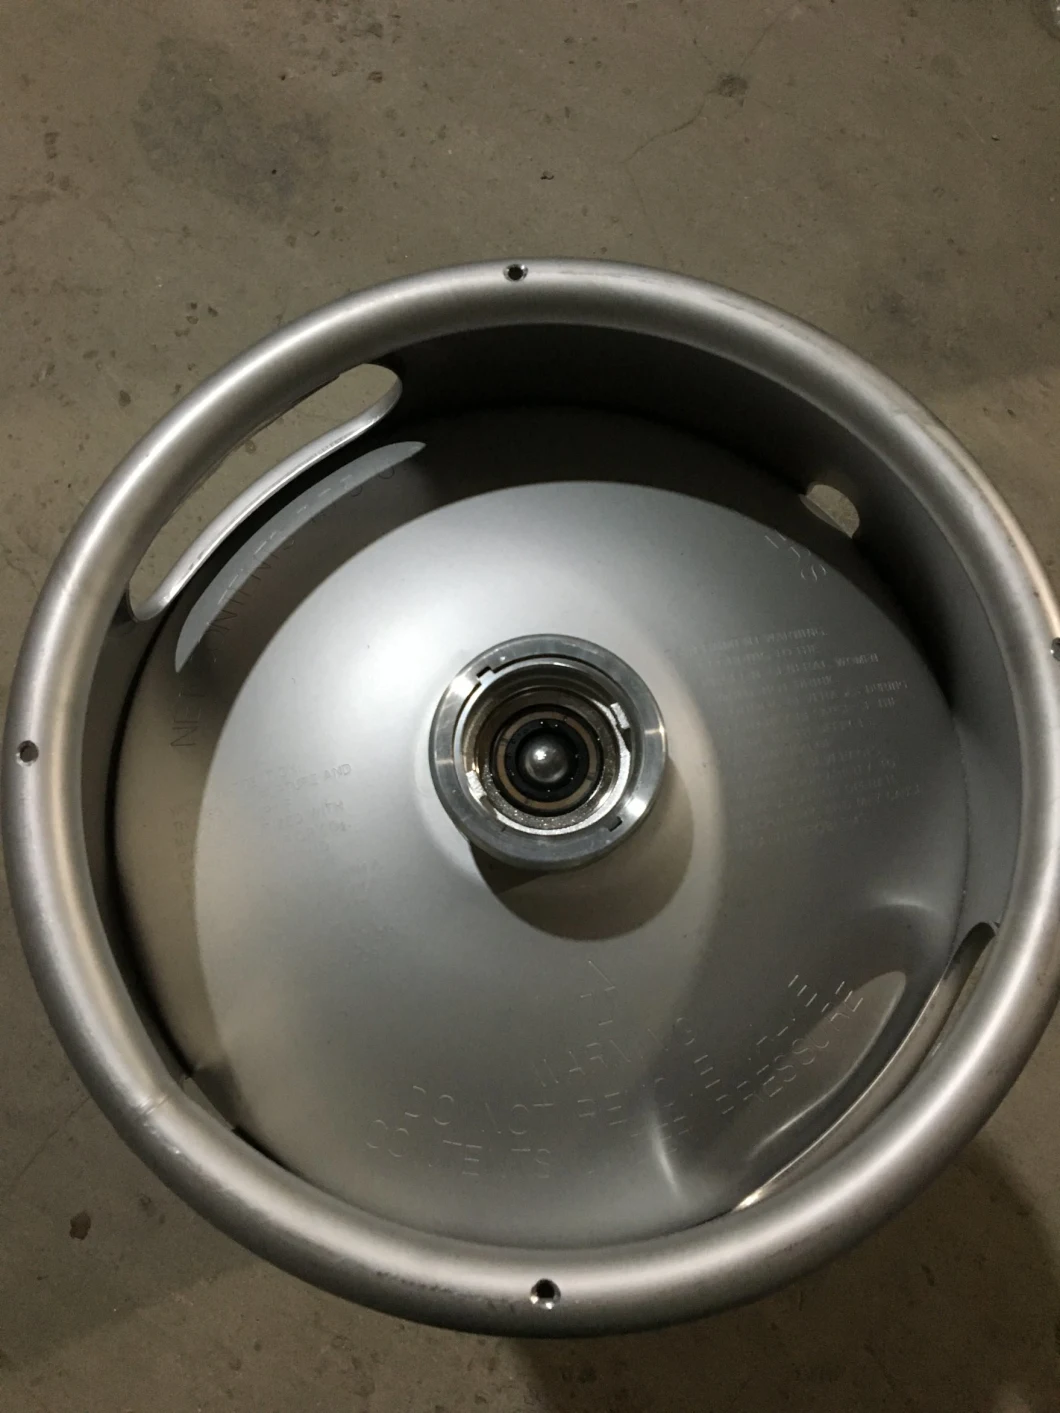 Beer Barrel 30L Customized Open 200 Liter Stainless Steel Metal Beer Barrel Drum with Lock Collar